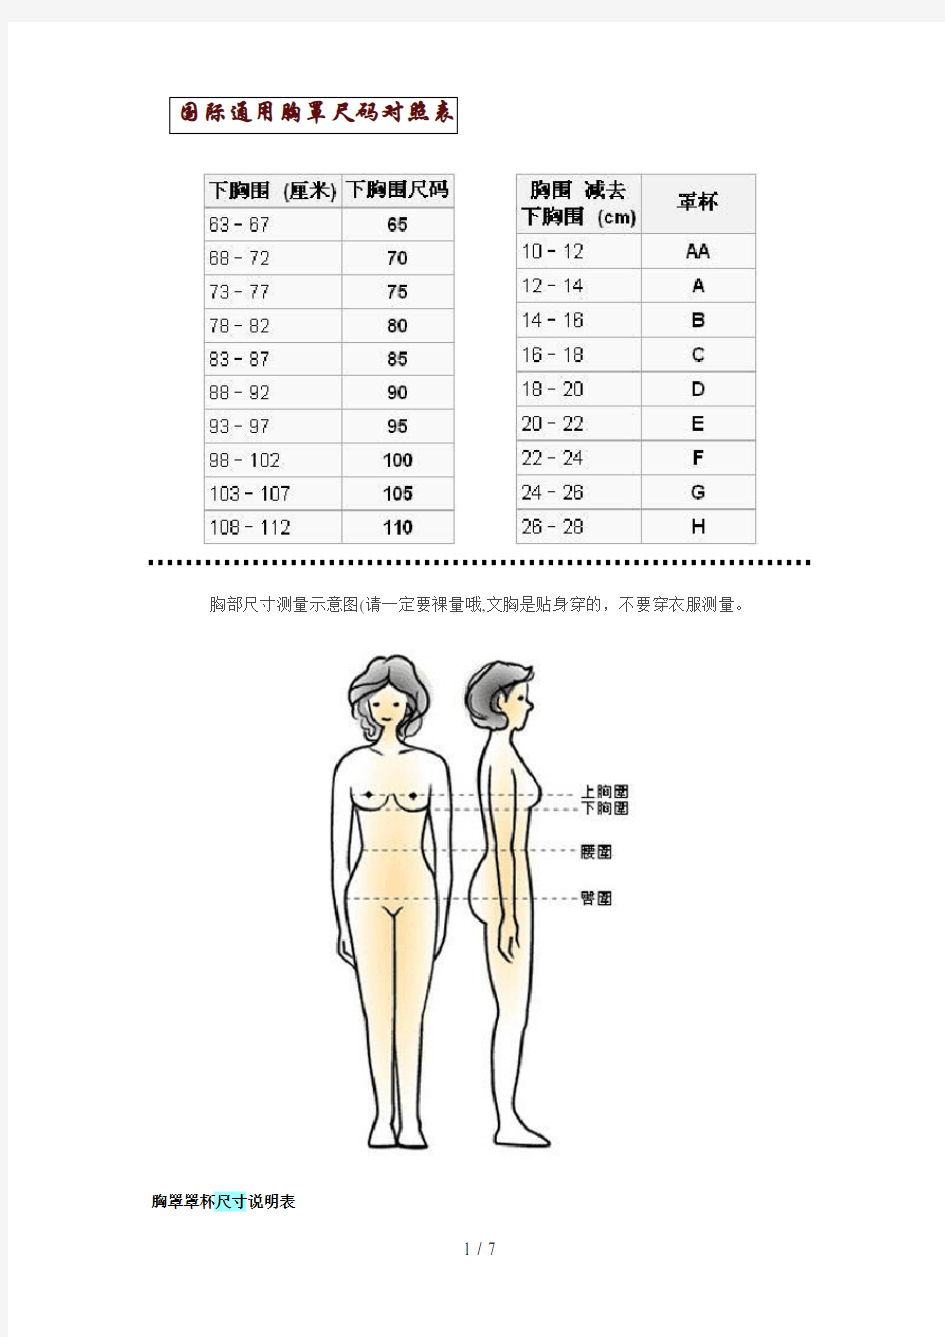 国际通用胸罩尺码对照表-与其他